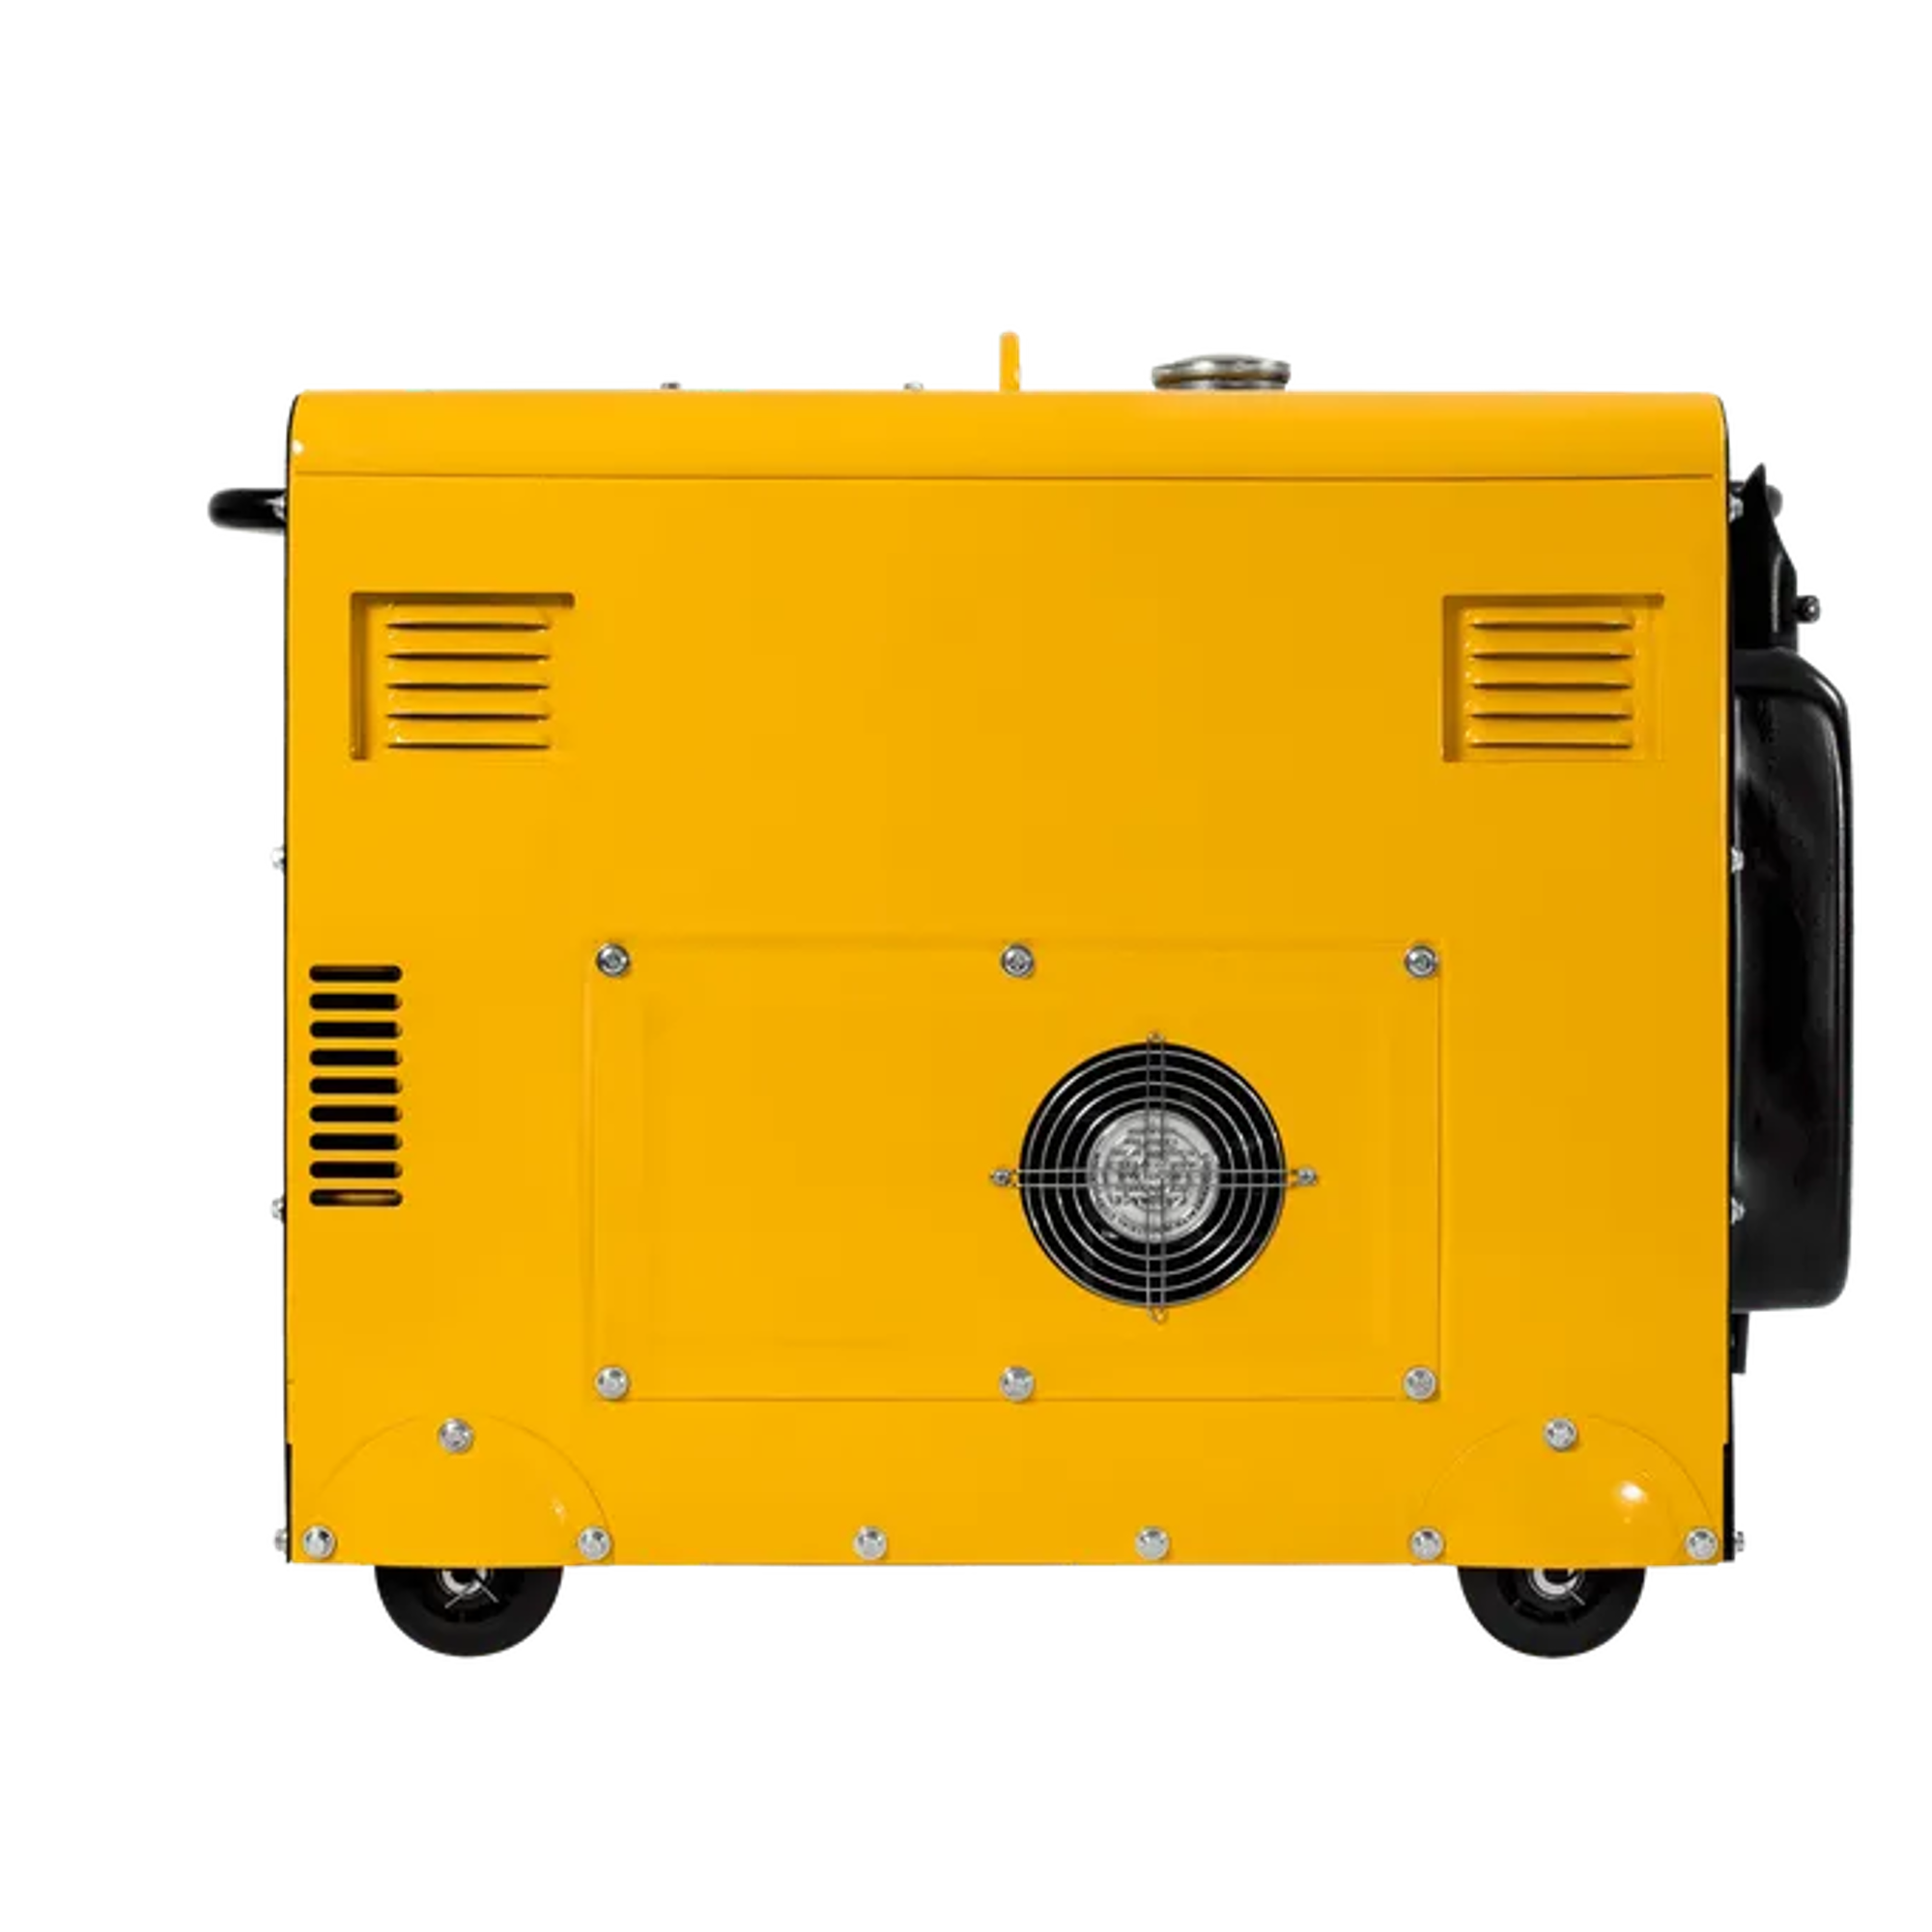 Diesel-Stromerzeuger 'Pro Power VIGD8ST' 6 kW 4-Takt-Motor 8 kVA 400 V